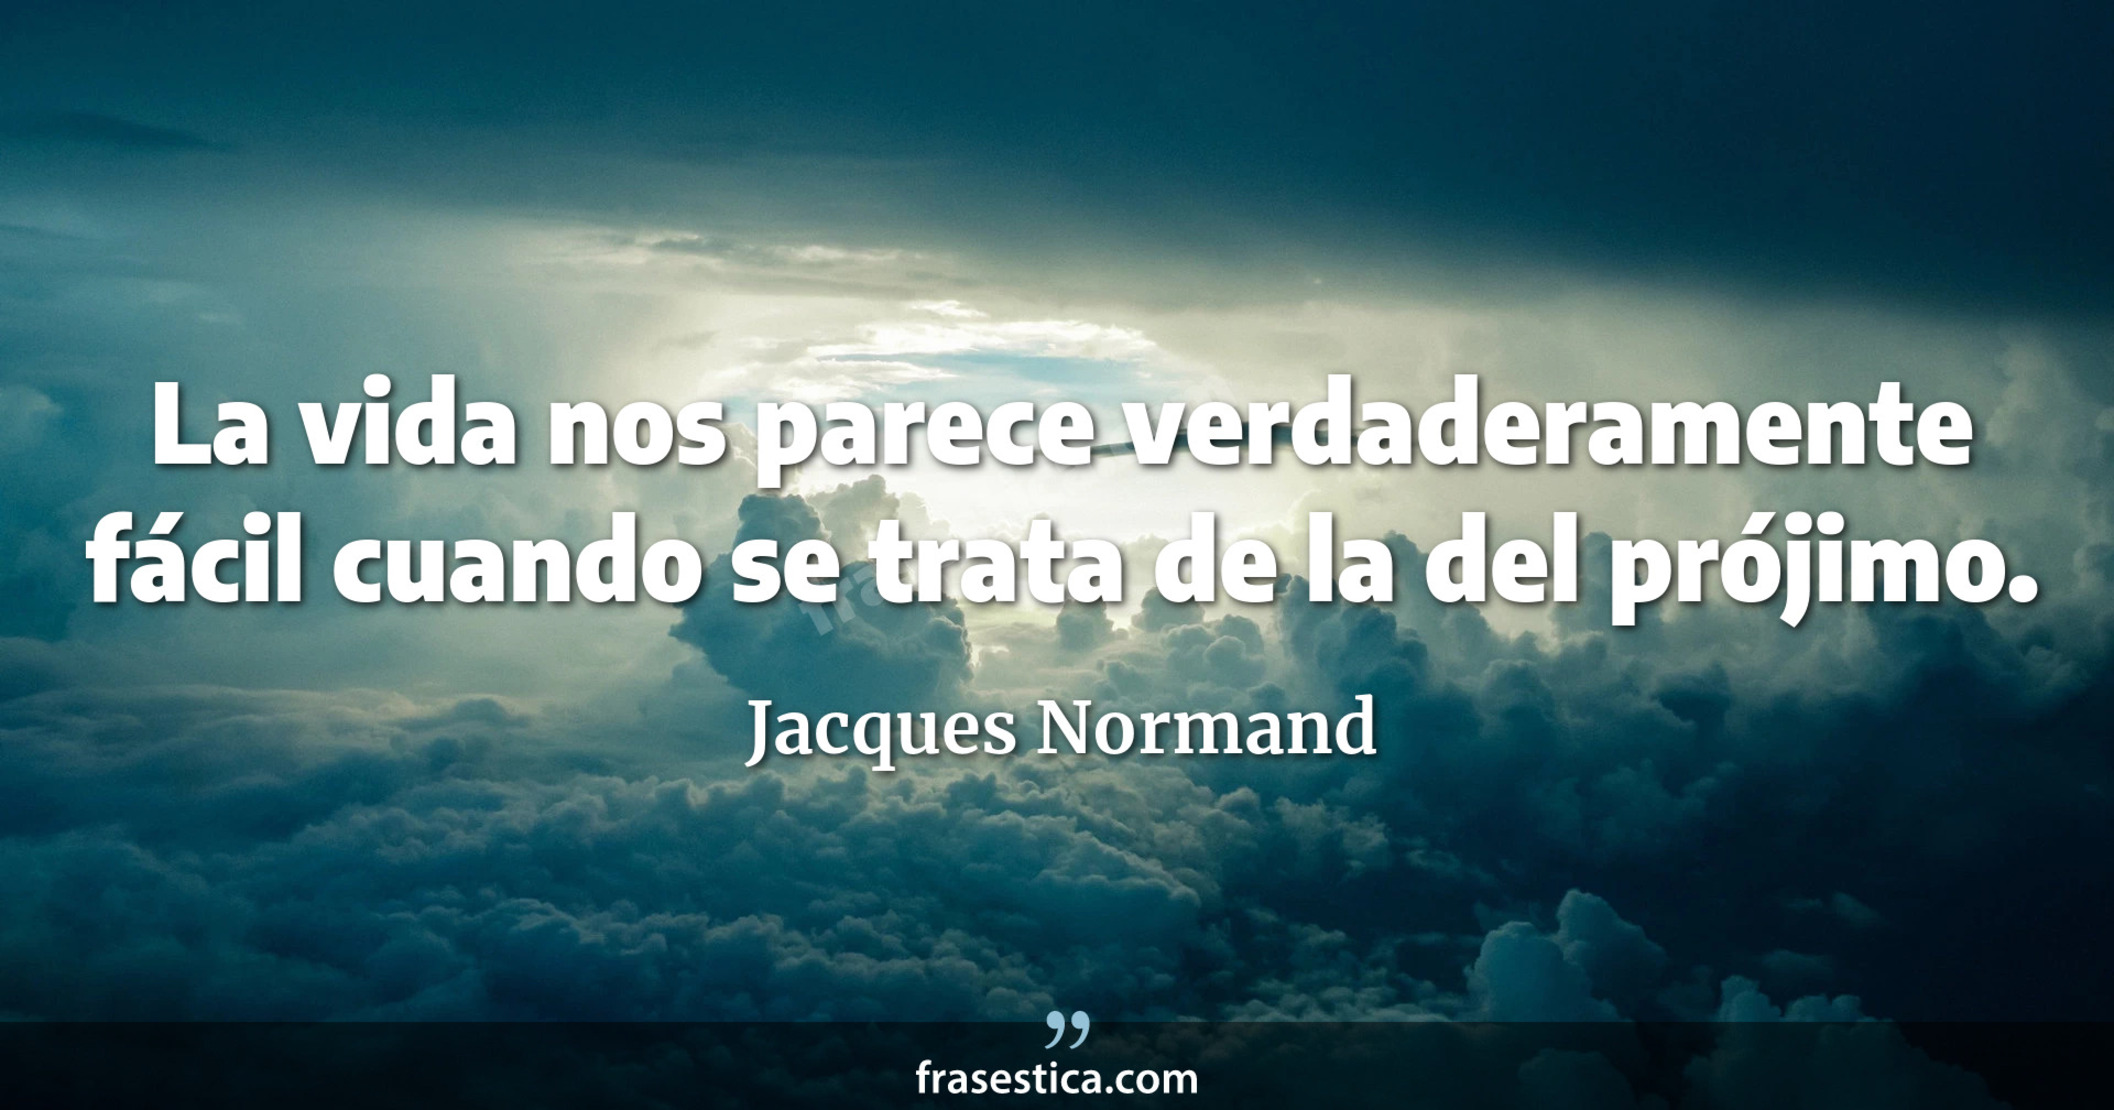 La vida nos parece verdaderamente fácil cuando se trata de la del prójimo. - Jacques Normand